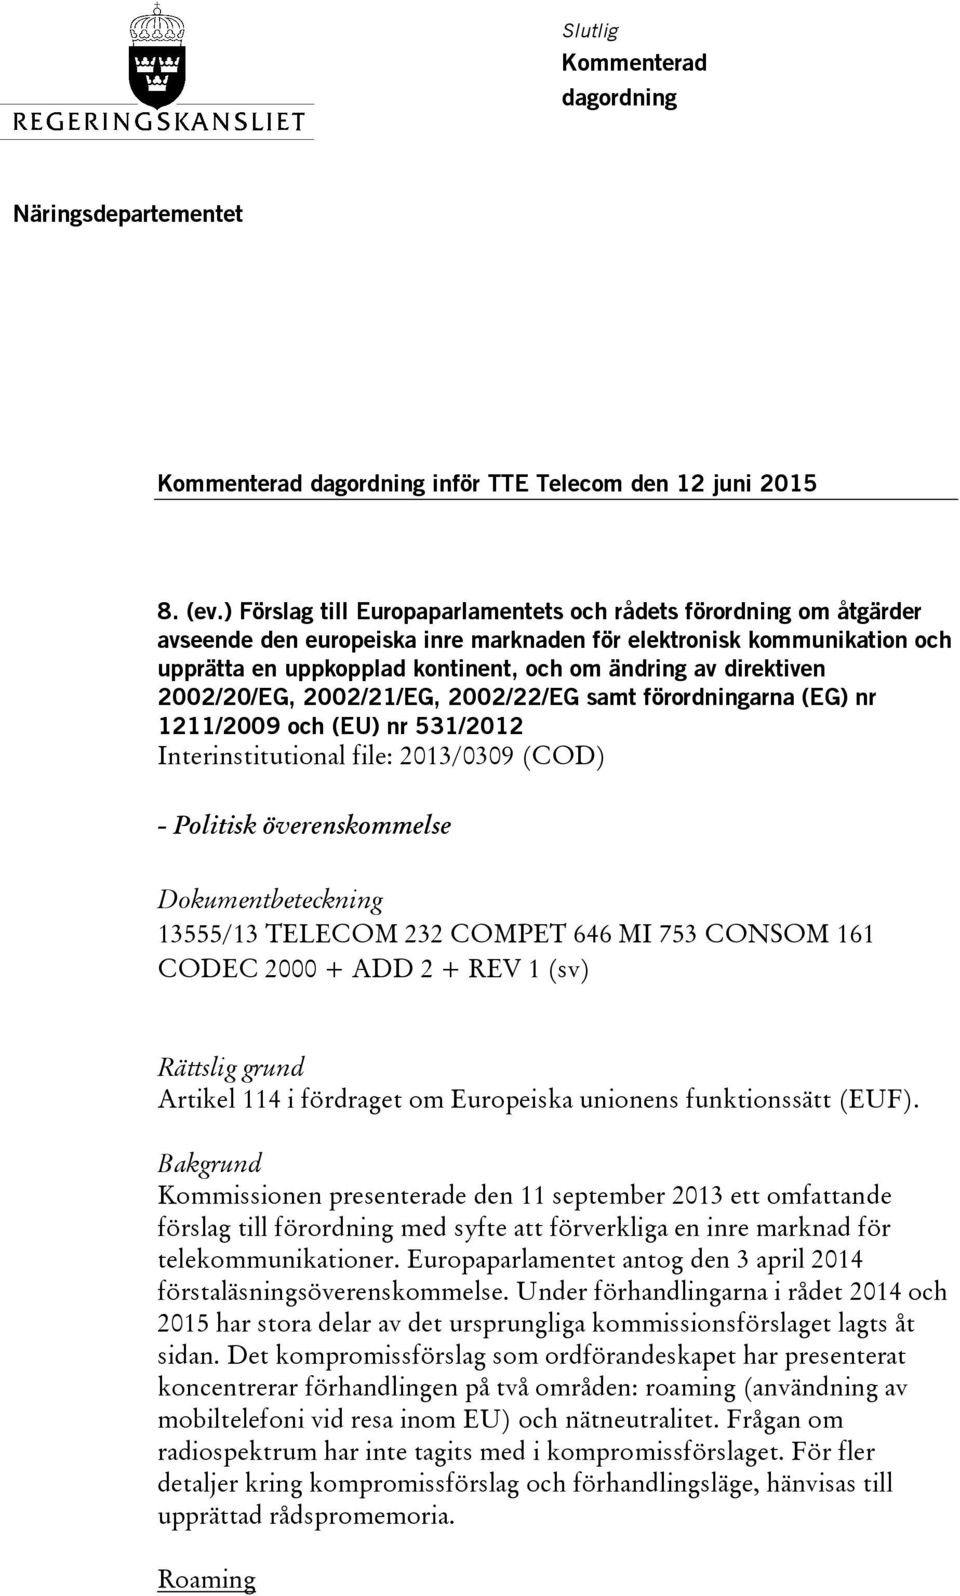 direktiven 2002/20/EG, 2002/21/EG, 2002/22/EG samt förordningarna (EG) nr 1211/2009 och (EU) nr 531/2012 Interinstitutional file: 2013/0309 (COD) - Politisk överenskommelse 13555/13 TELECOM 232